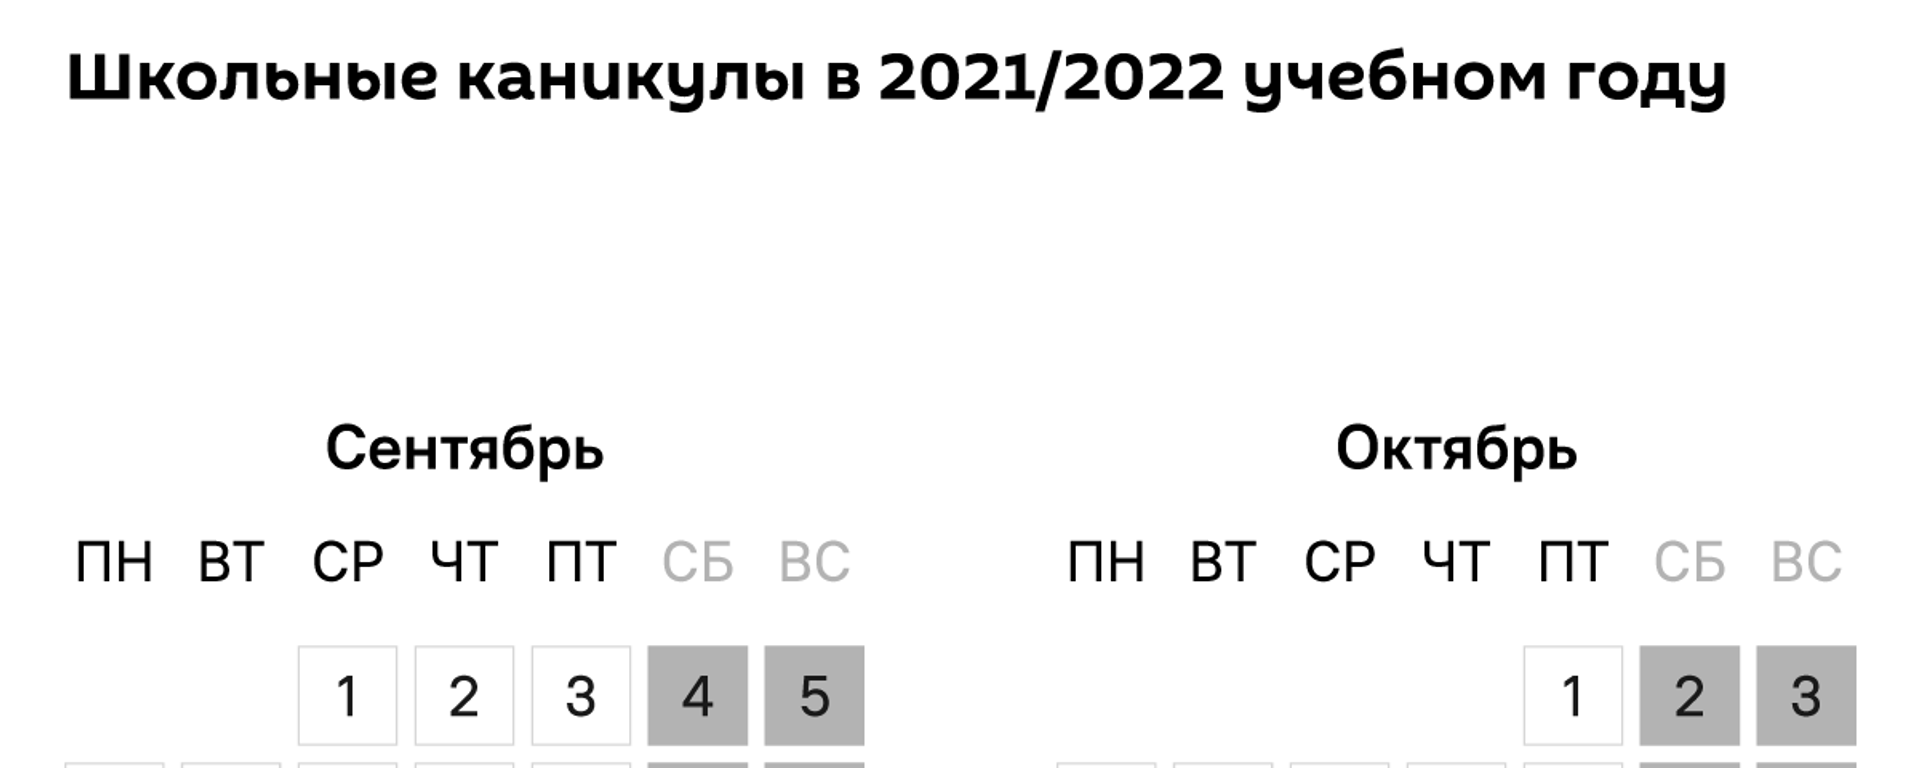 Школьные каникулы в 2021/2022 учебном году - Sputnik Кыргызстан, 1920, 16.08.2021